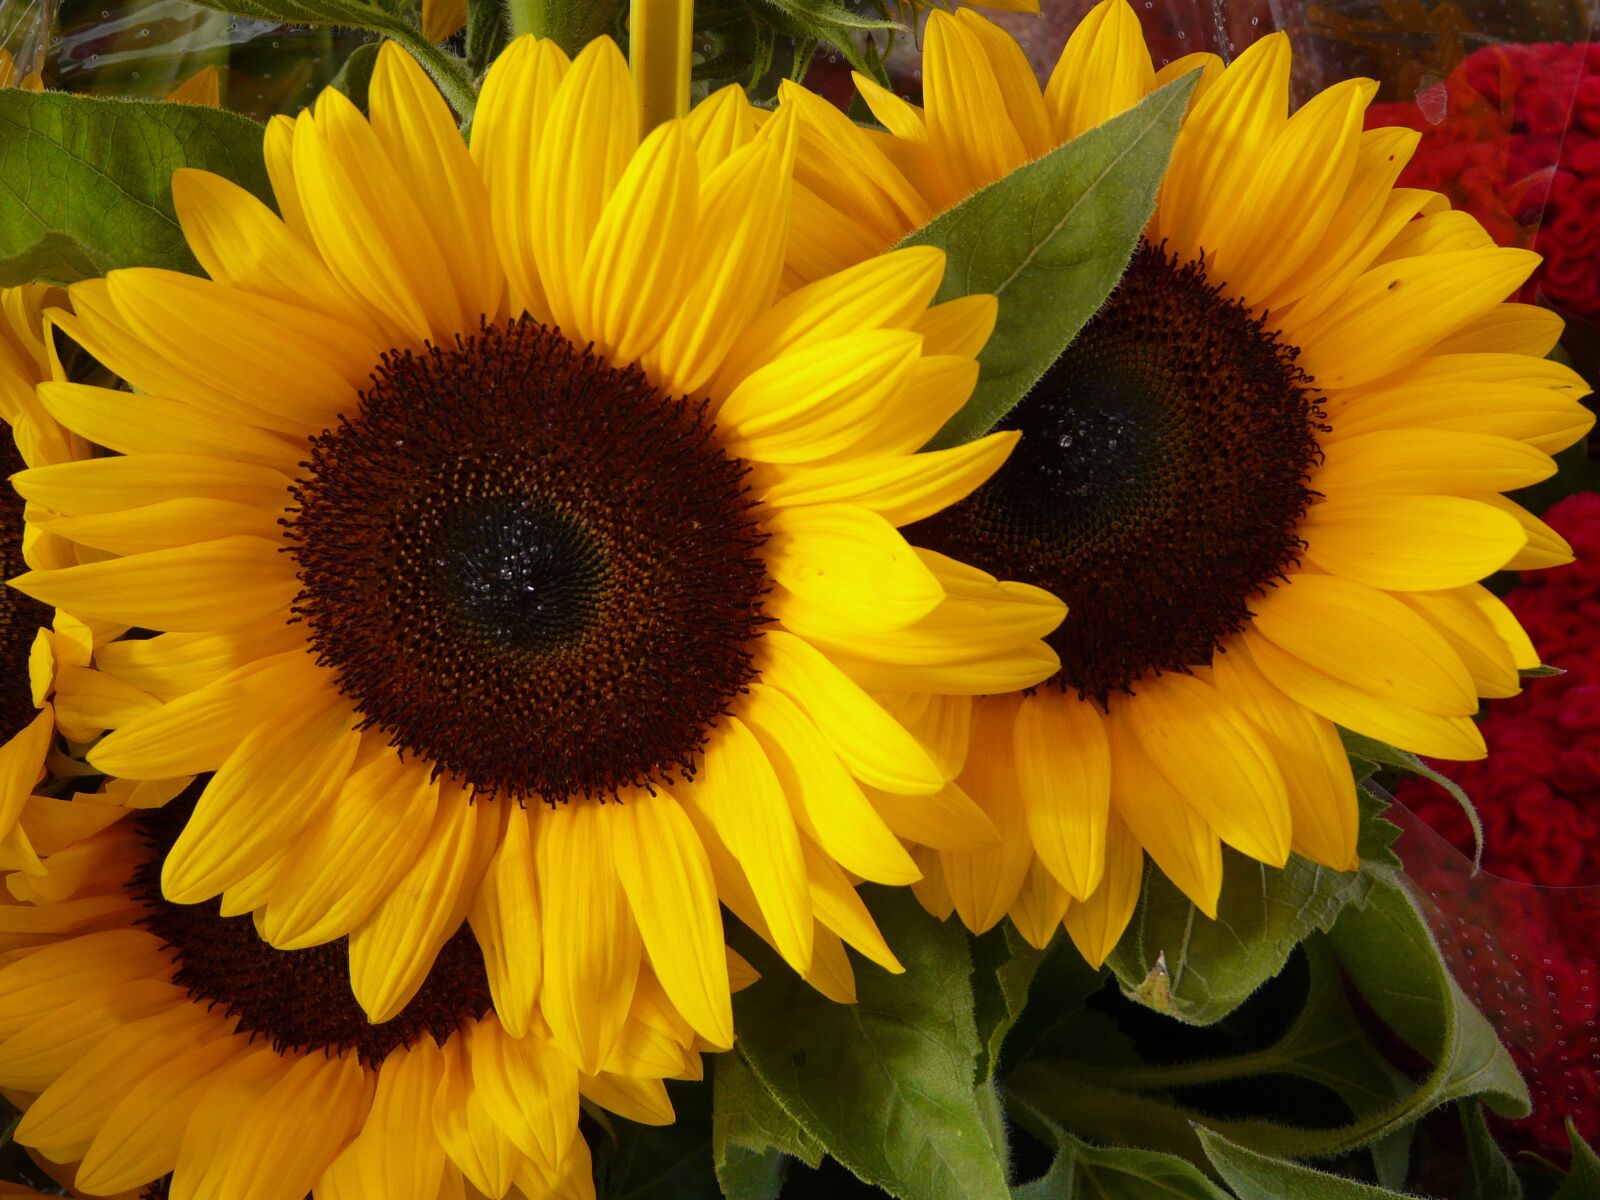 Panasonic DMC-FZ18 sample photo. Sunflower, flower, yellow photography